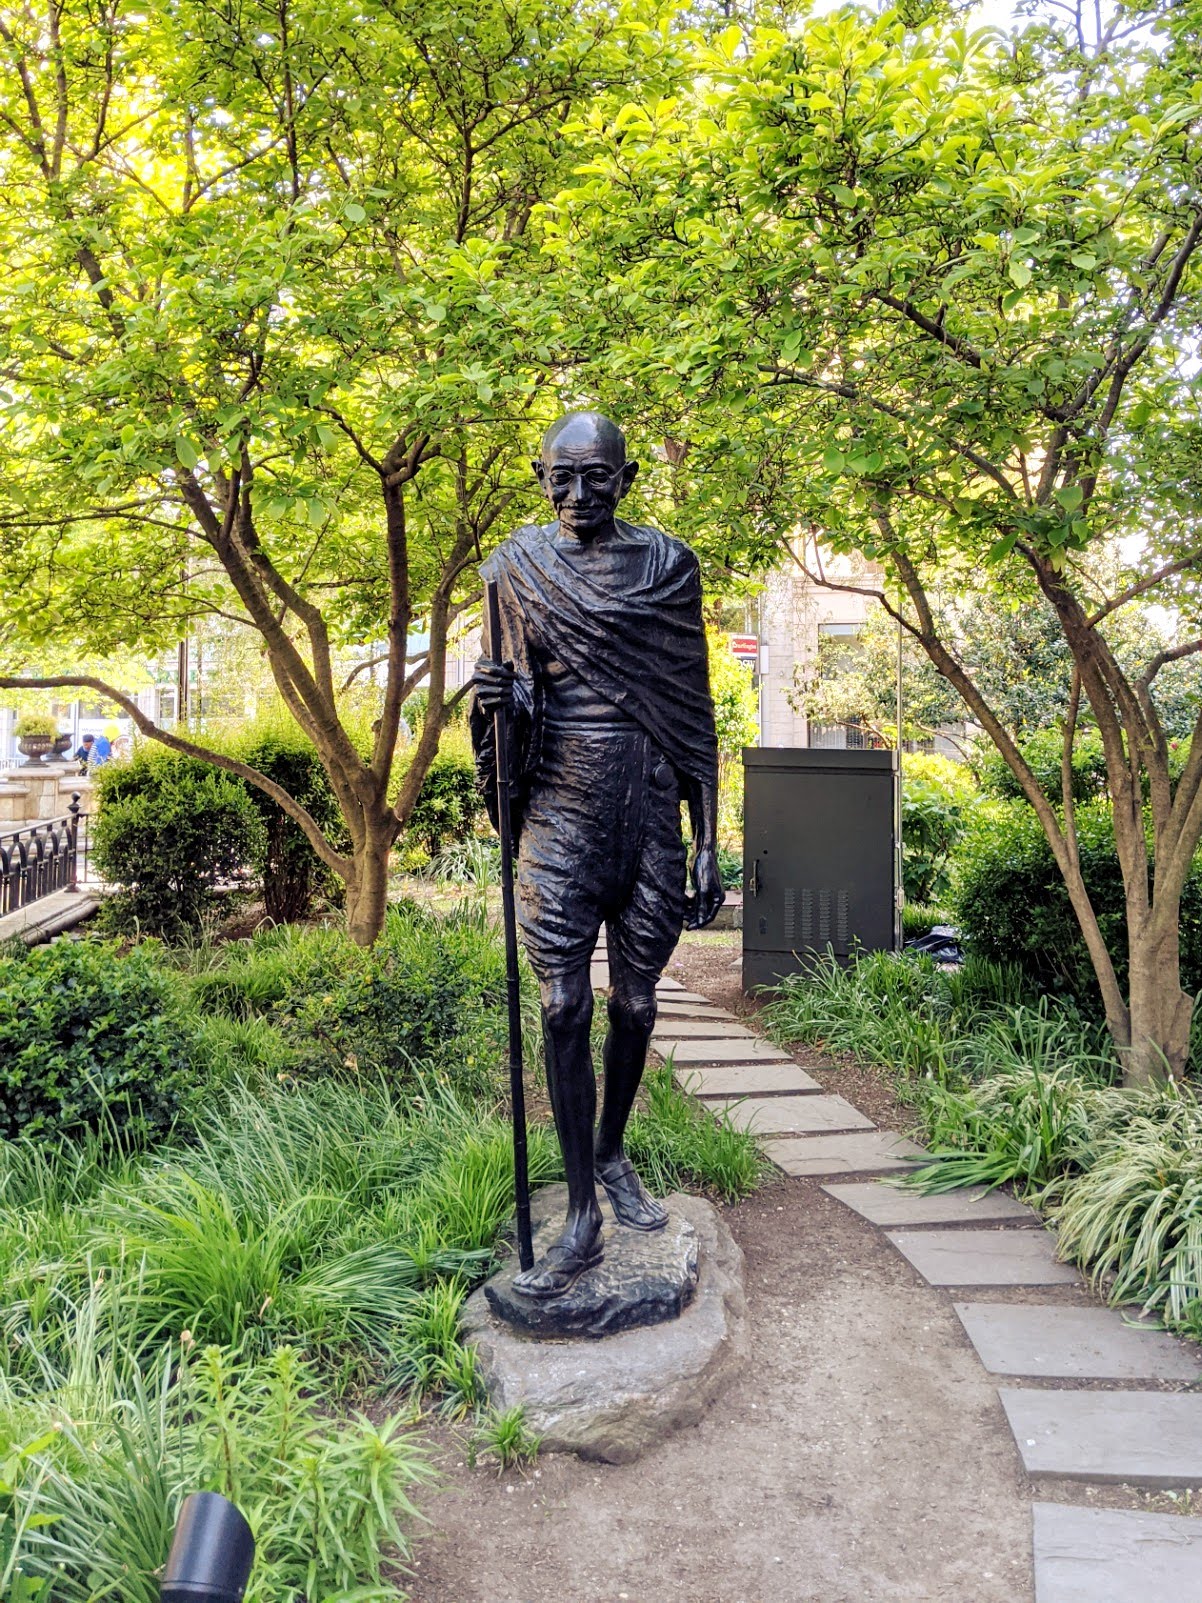 Gandhi statue in Union Square